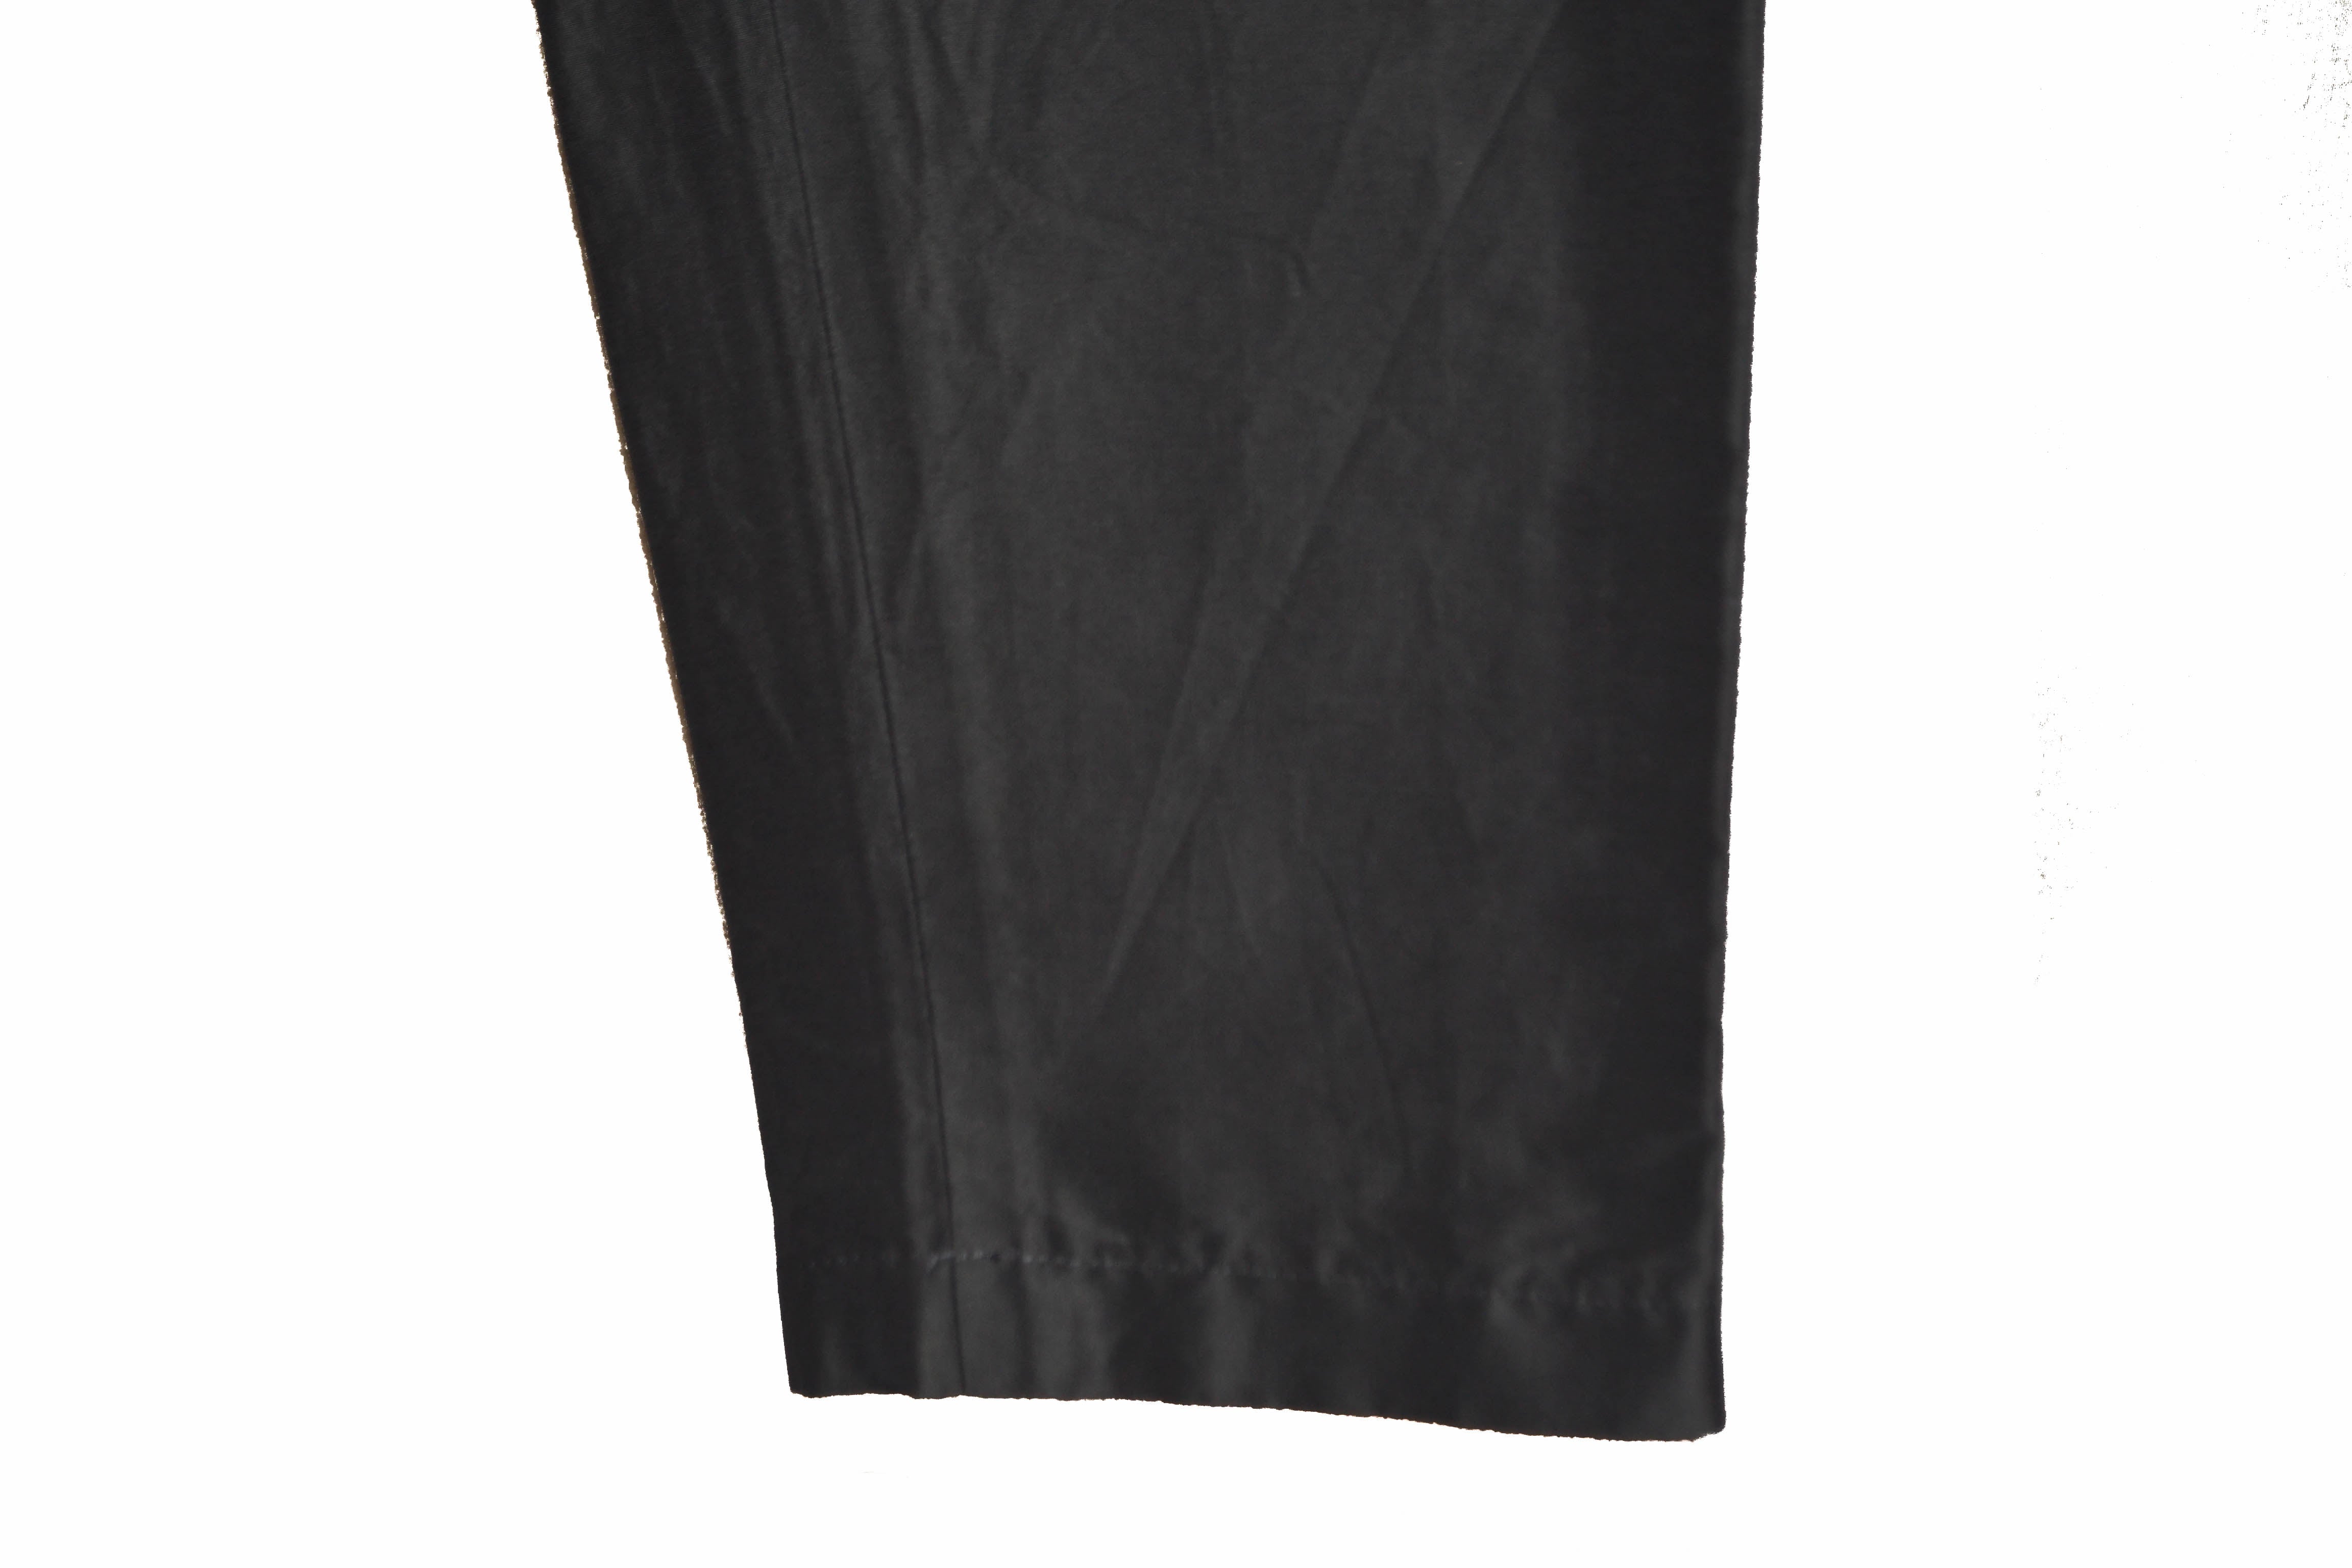 Authentic Louis Vuitton Black Pants Women's Size 38